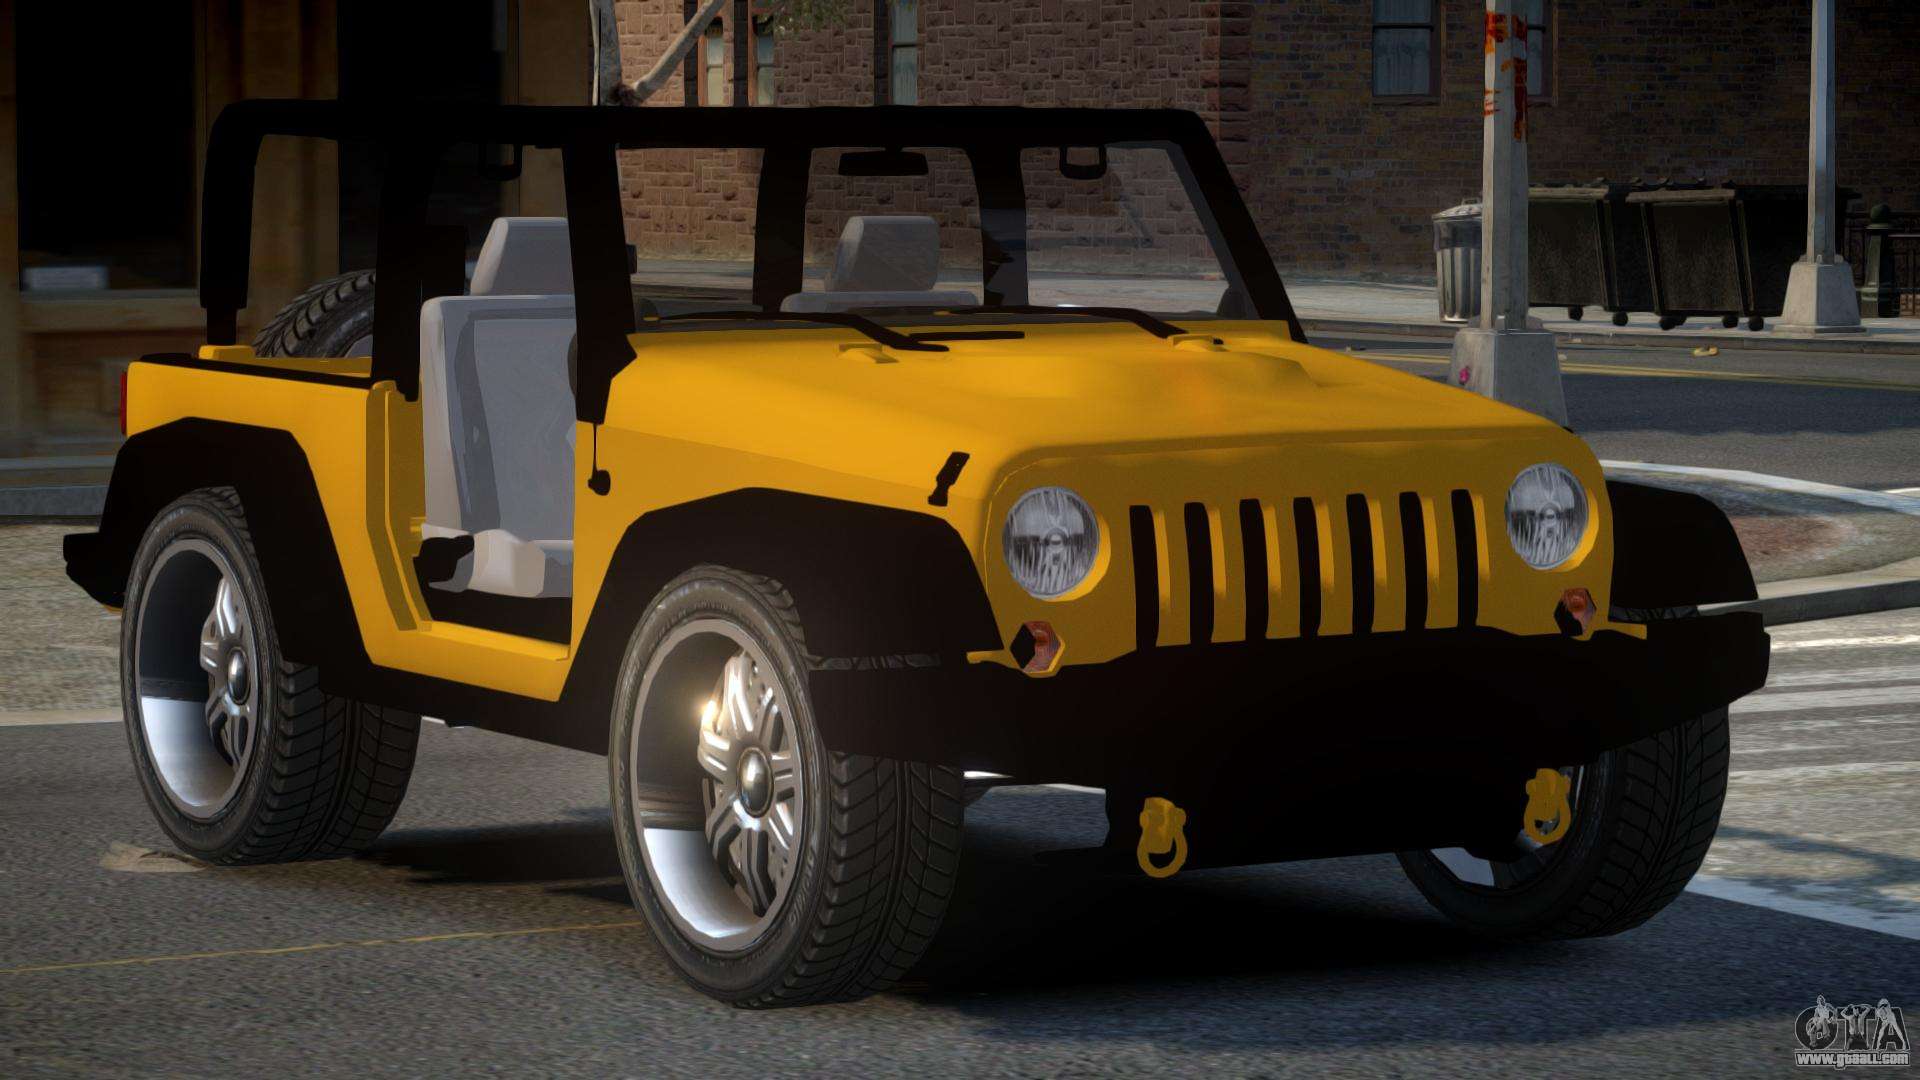 Jeep Wrangler 90S for GTA 4